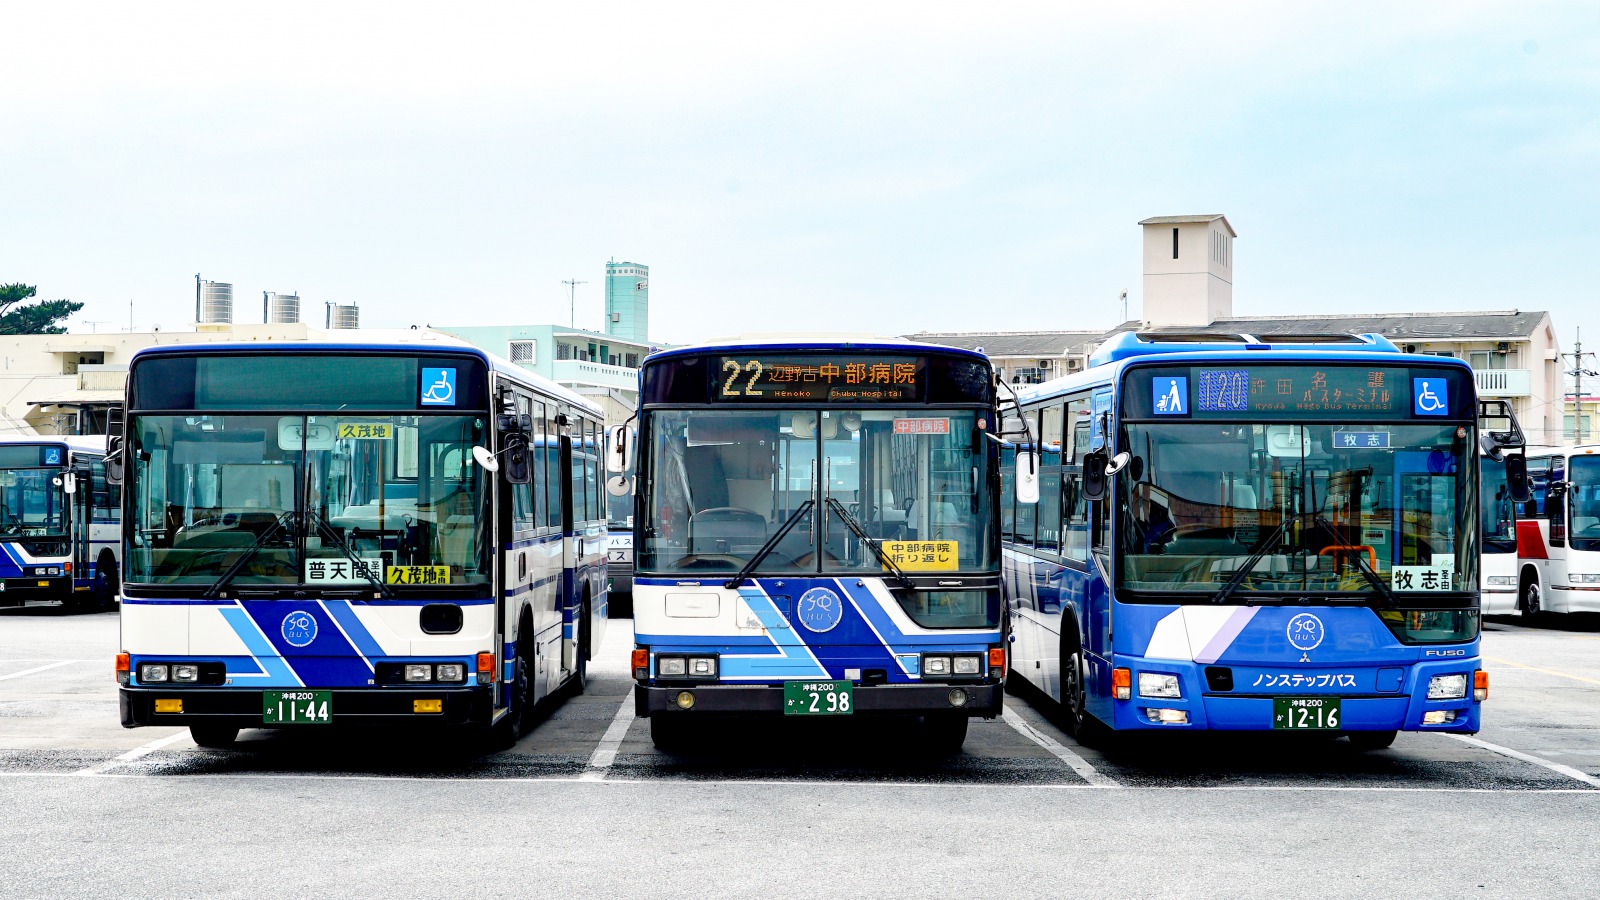 移籍バスの行方を追跡!! 首都圏から日本各地へ旅立ったバスたち【川崎